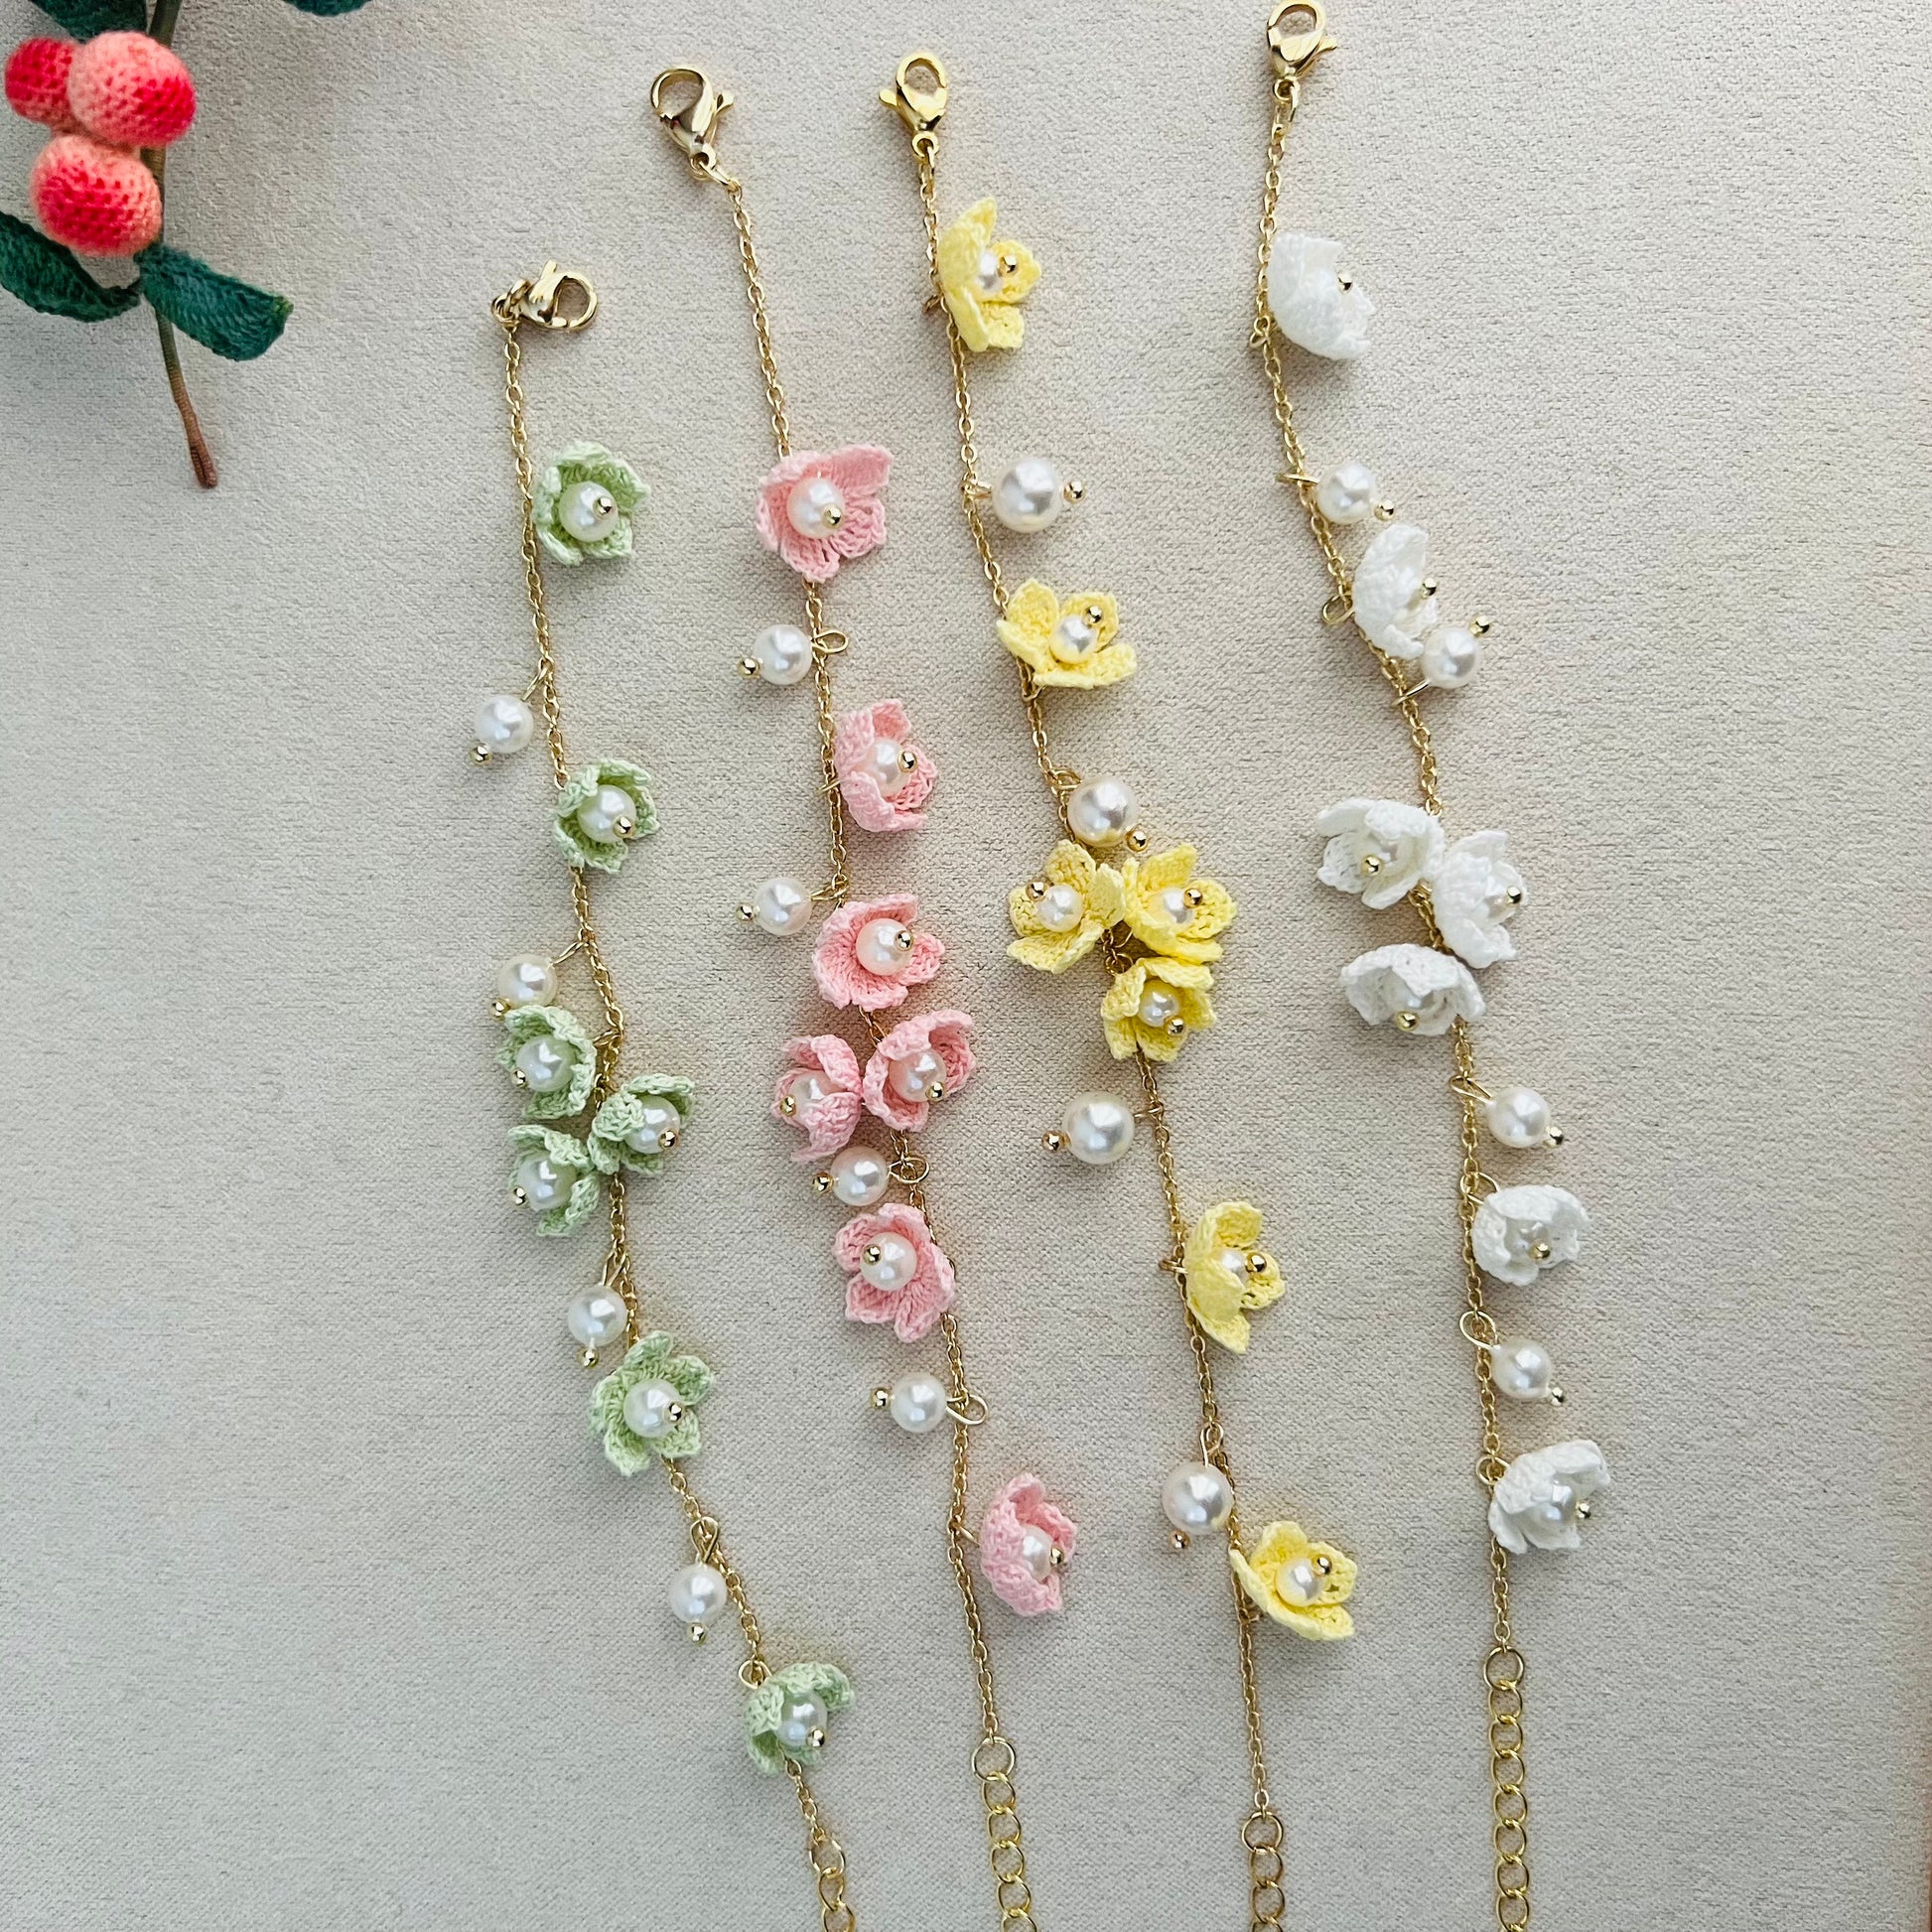 Mini Crochet Flower Bracelets